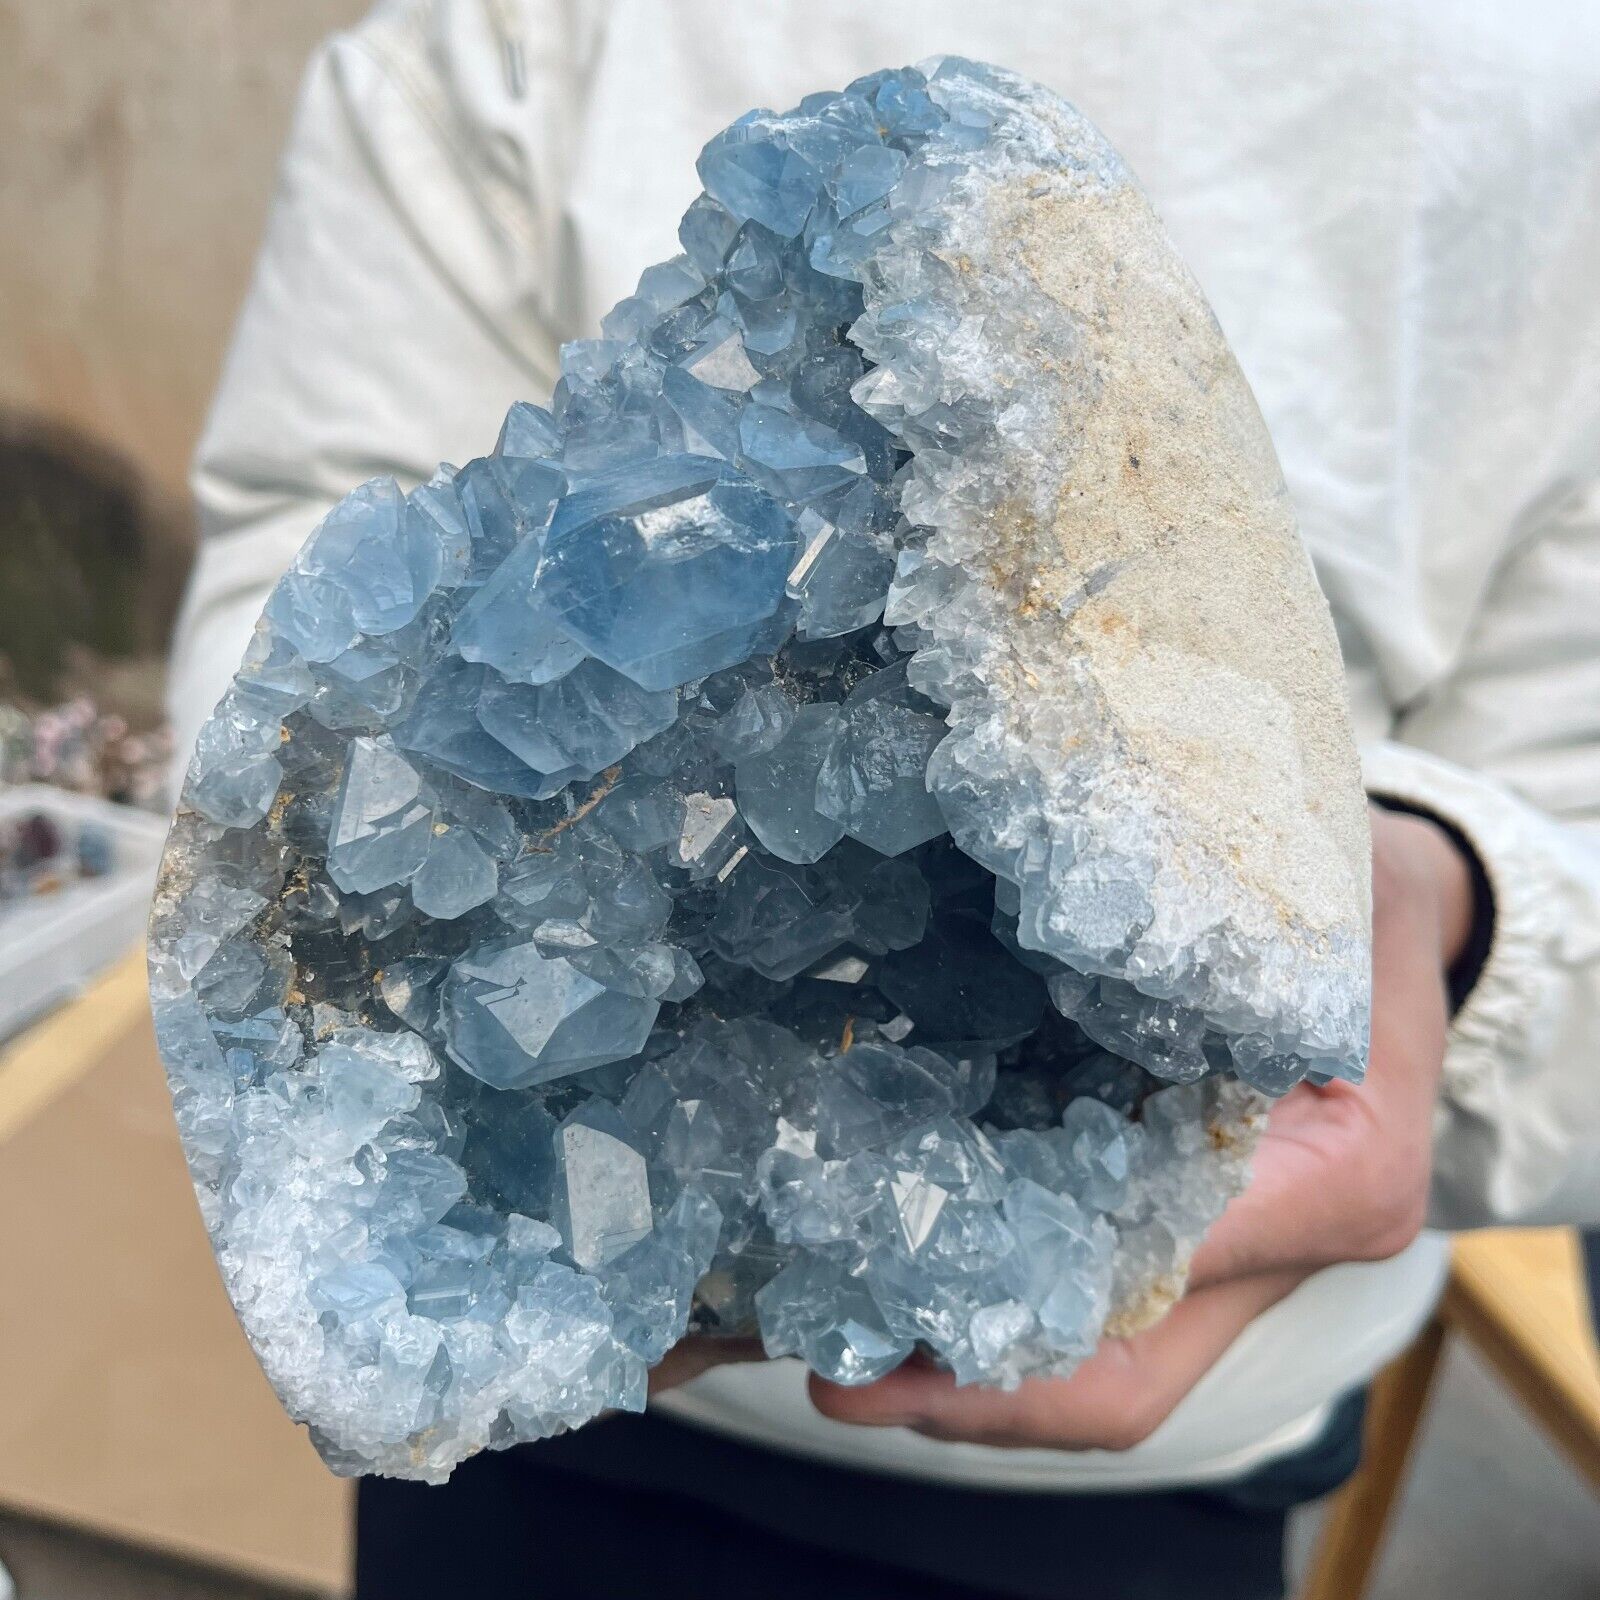 6lb Large Natural Blue Celestite Crystal Geode Quartz Cluster Mineral Specimen